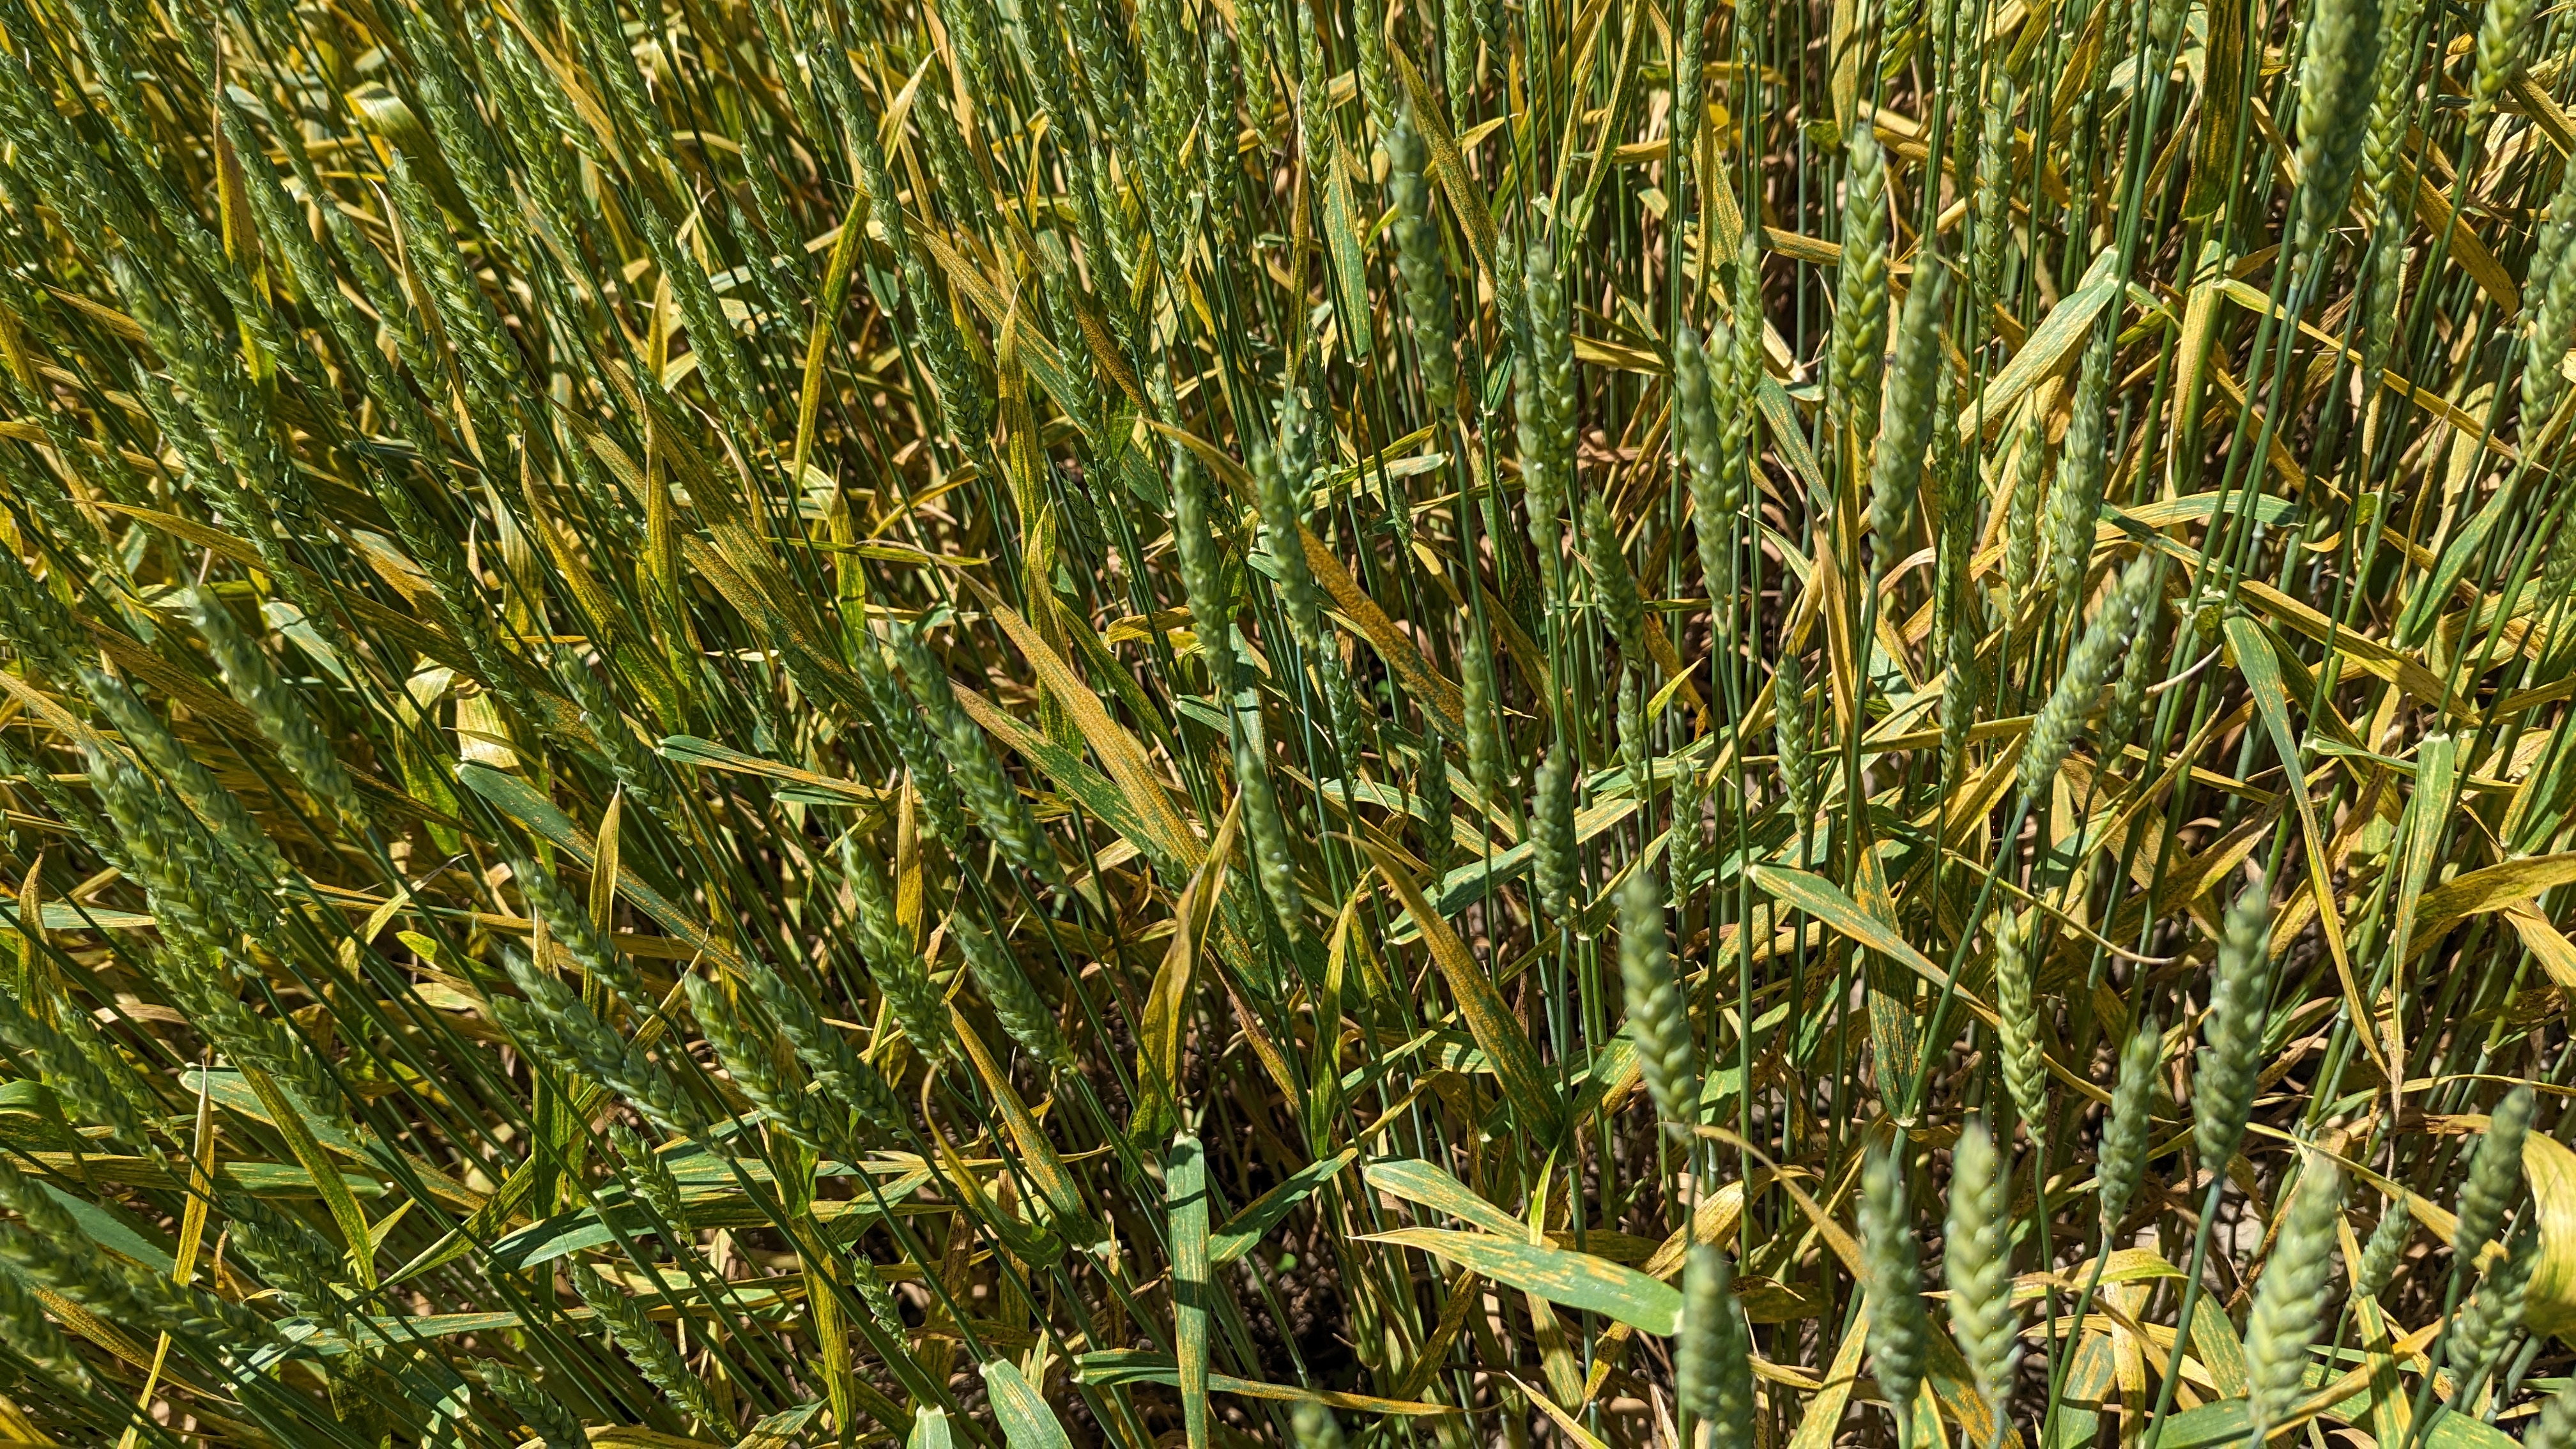 Wheat growing in a field.